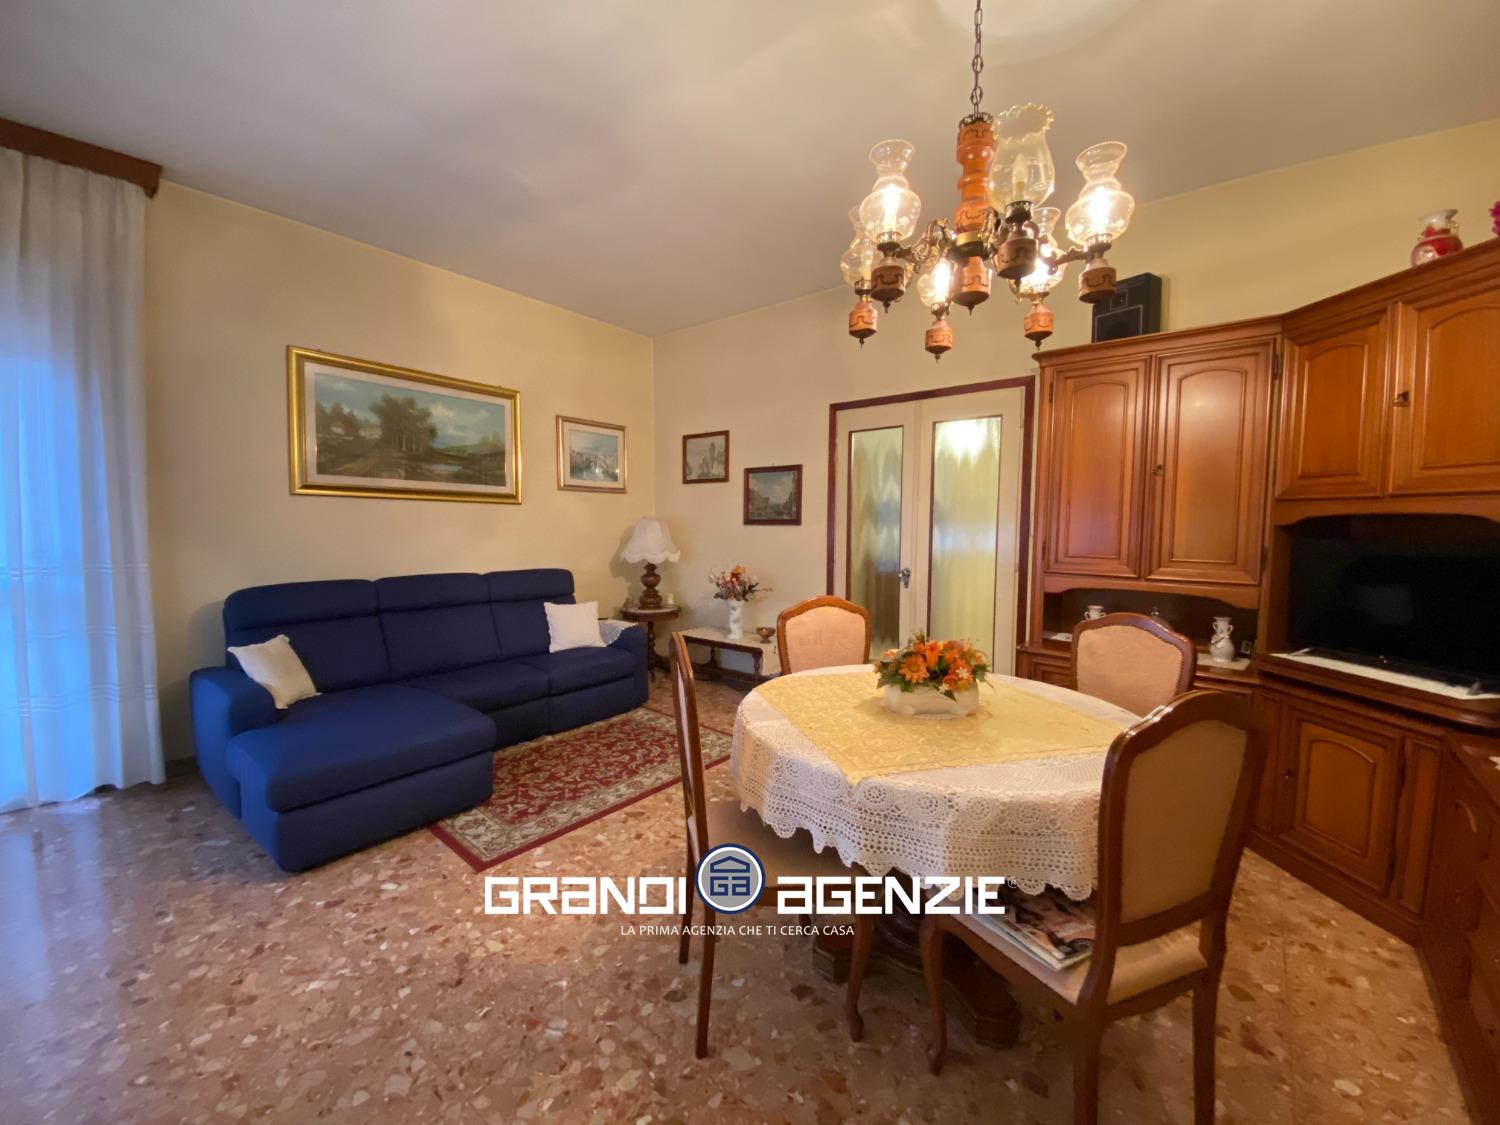 Appartamento in vendita a Treviso, 3 locali, prezzo € 109.000 | PortaleAgenzieImmobiliari.it